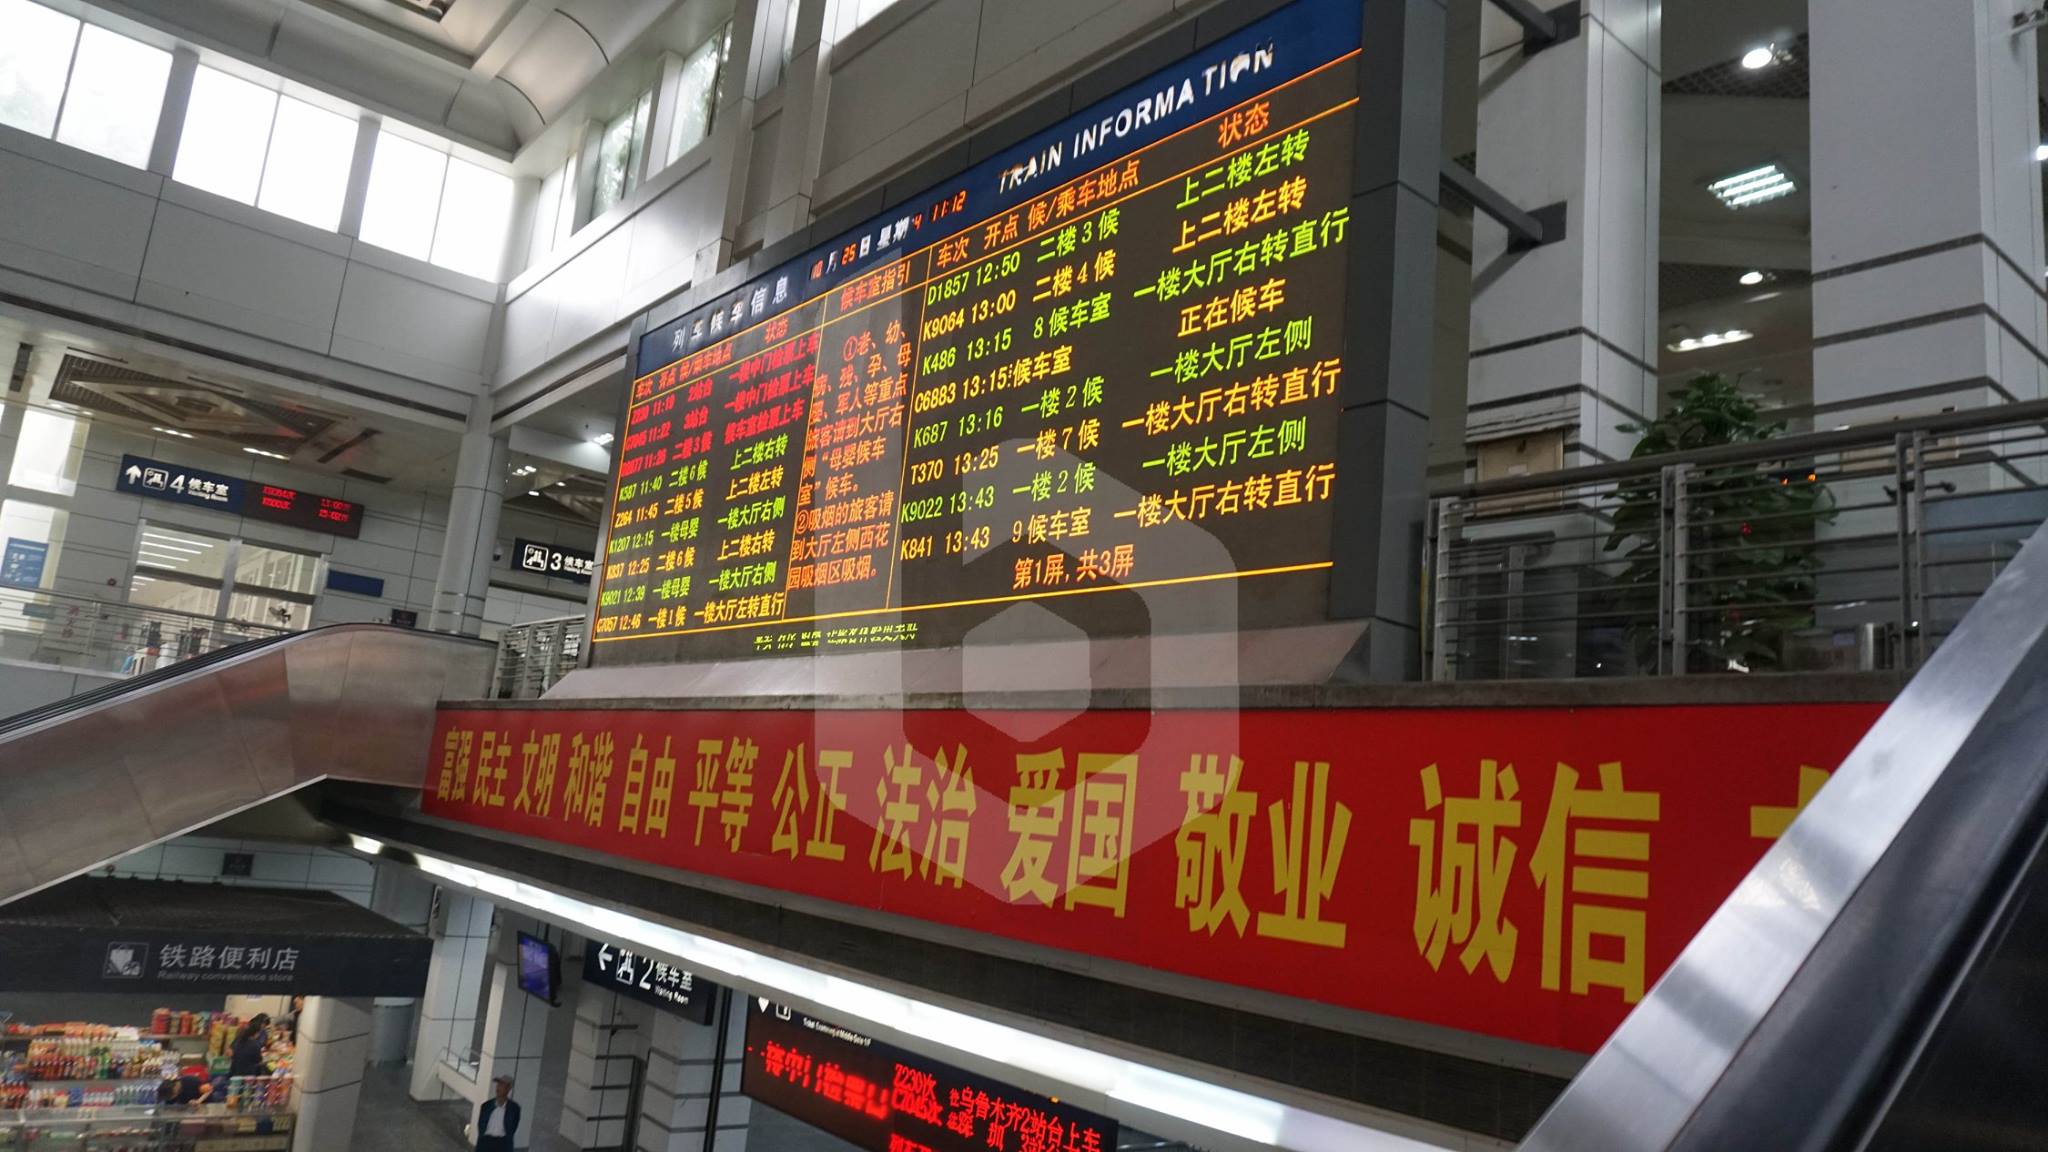 Guangzhou to Xi'an by train